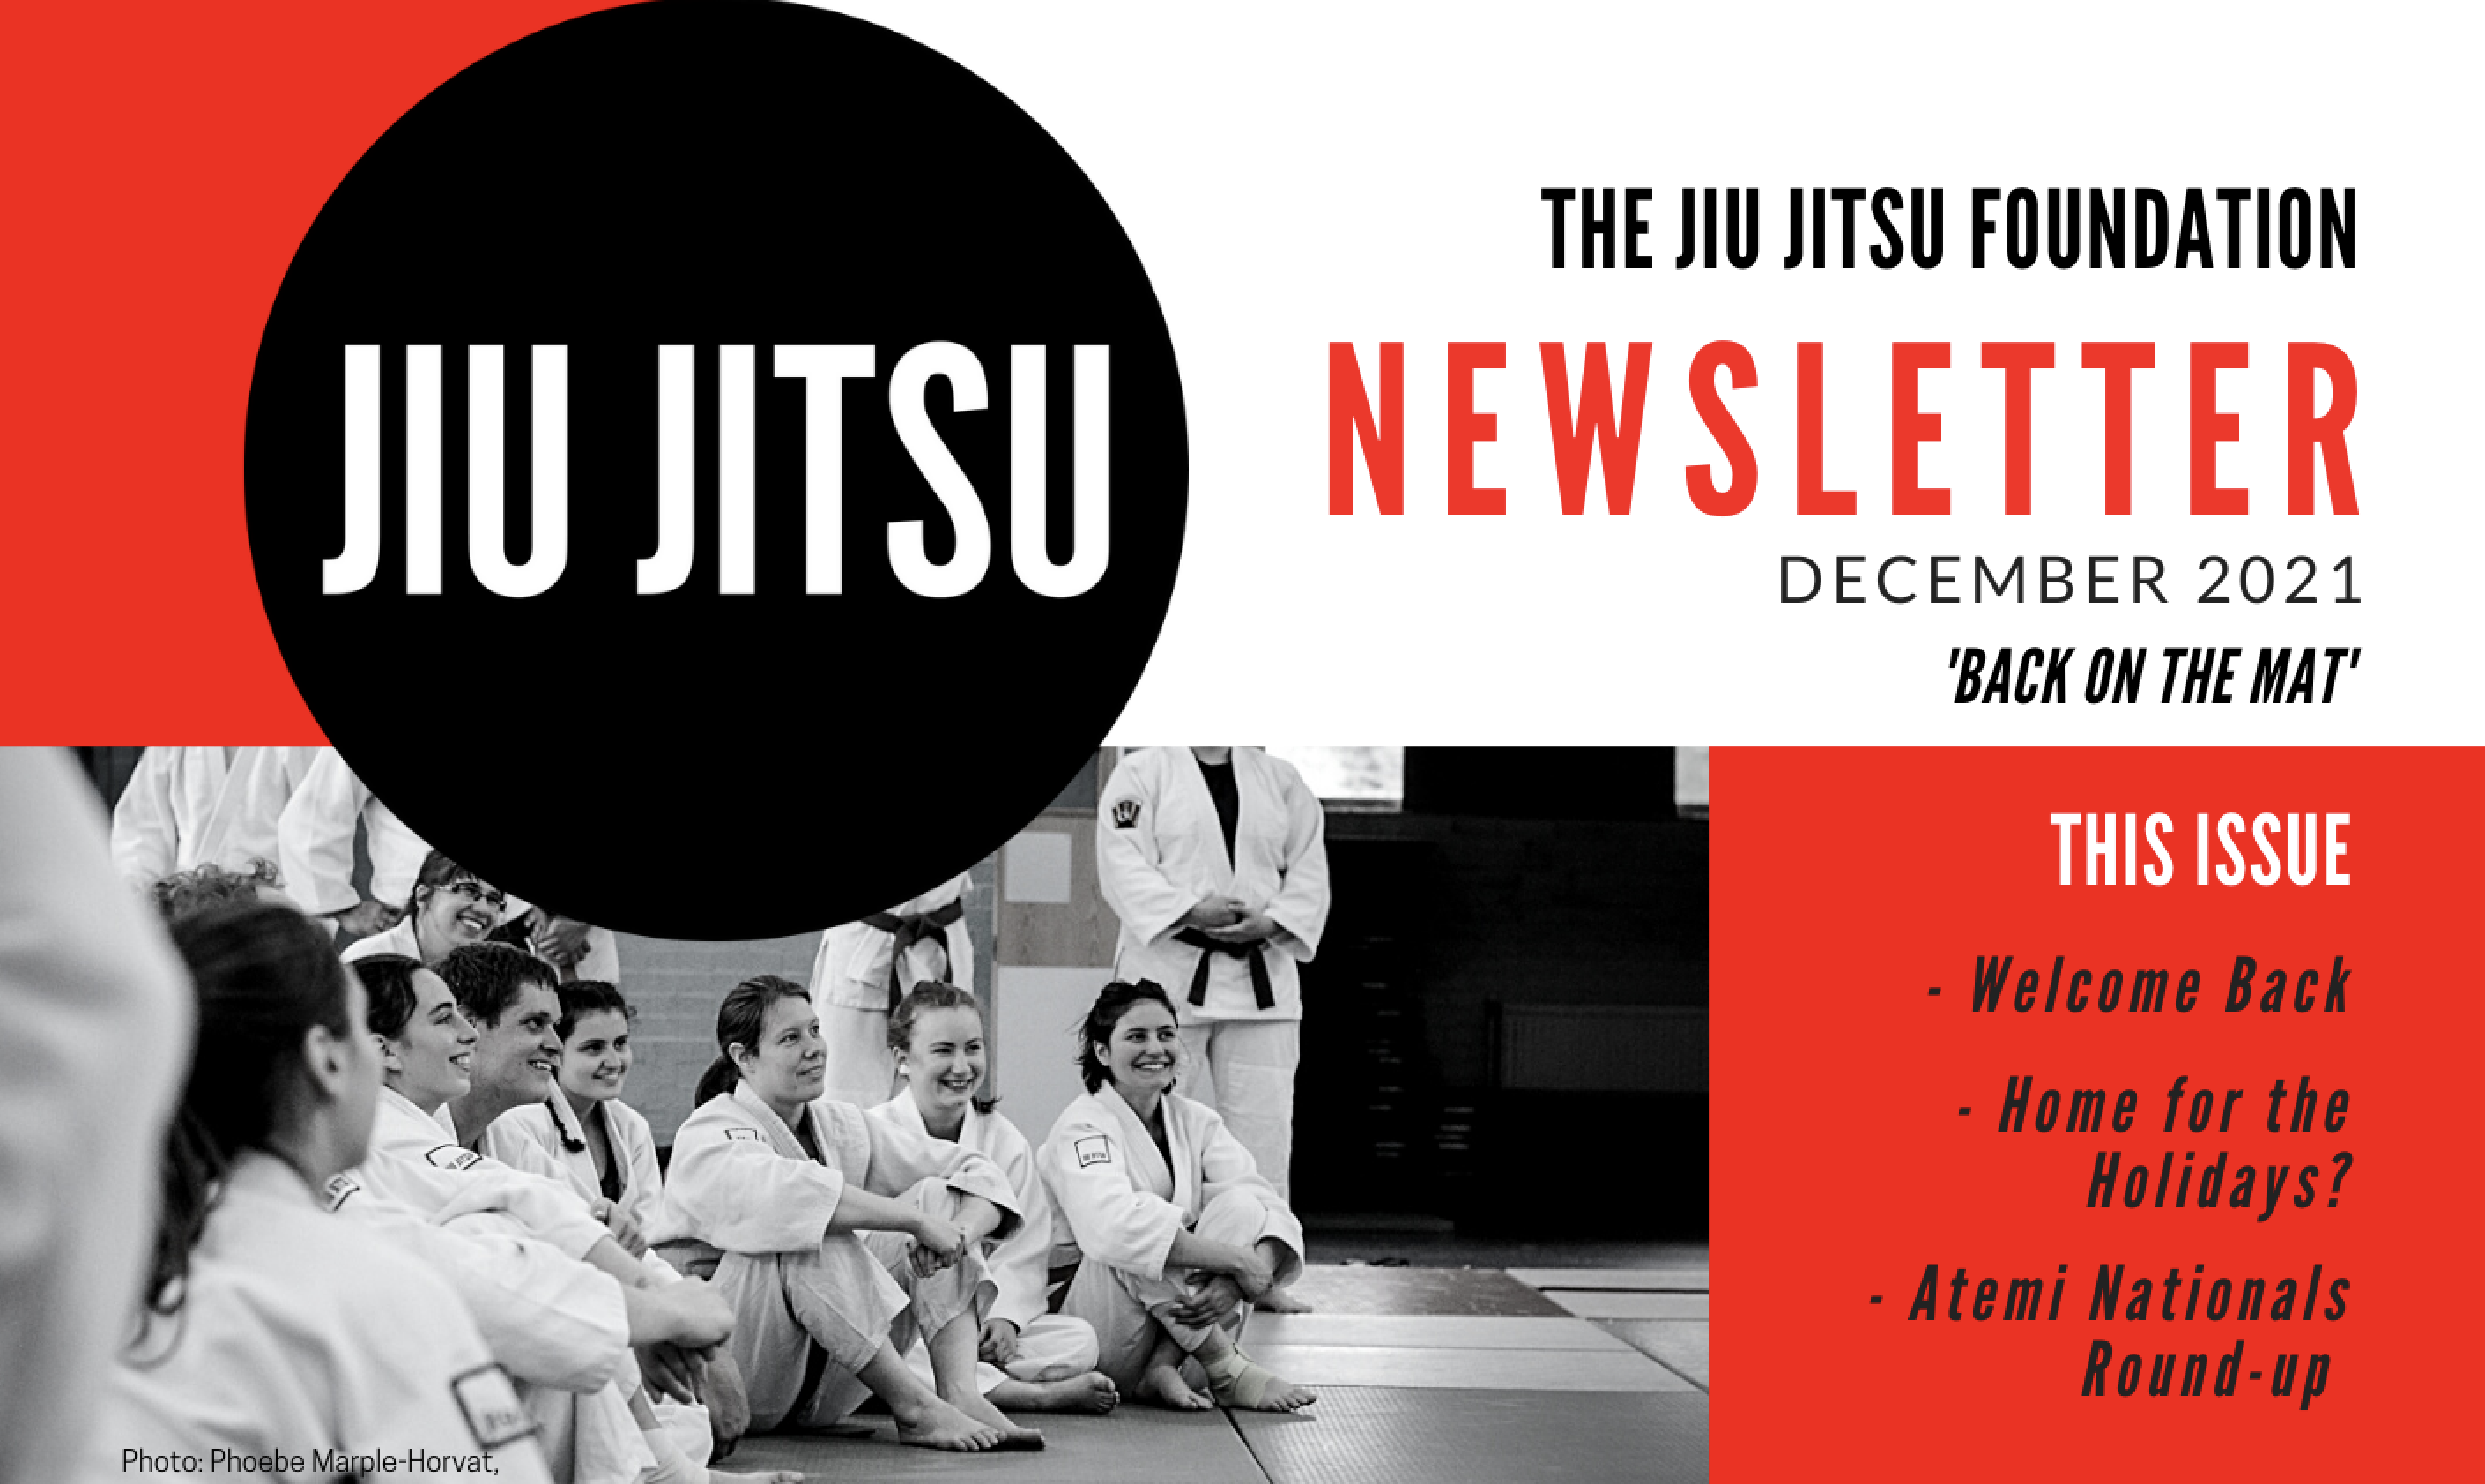 The Jiu Jitsu Foundation